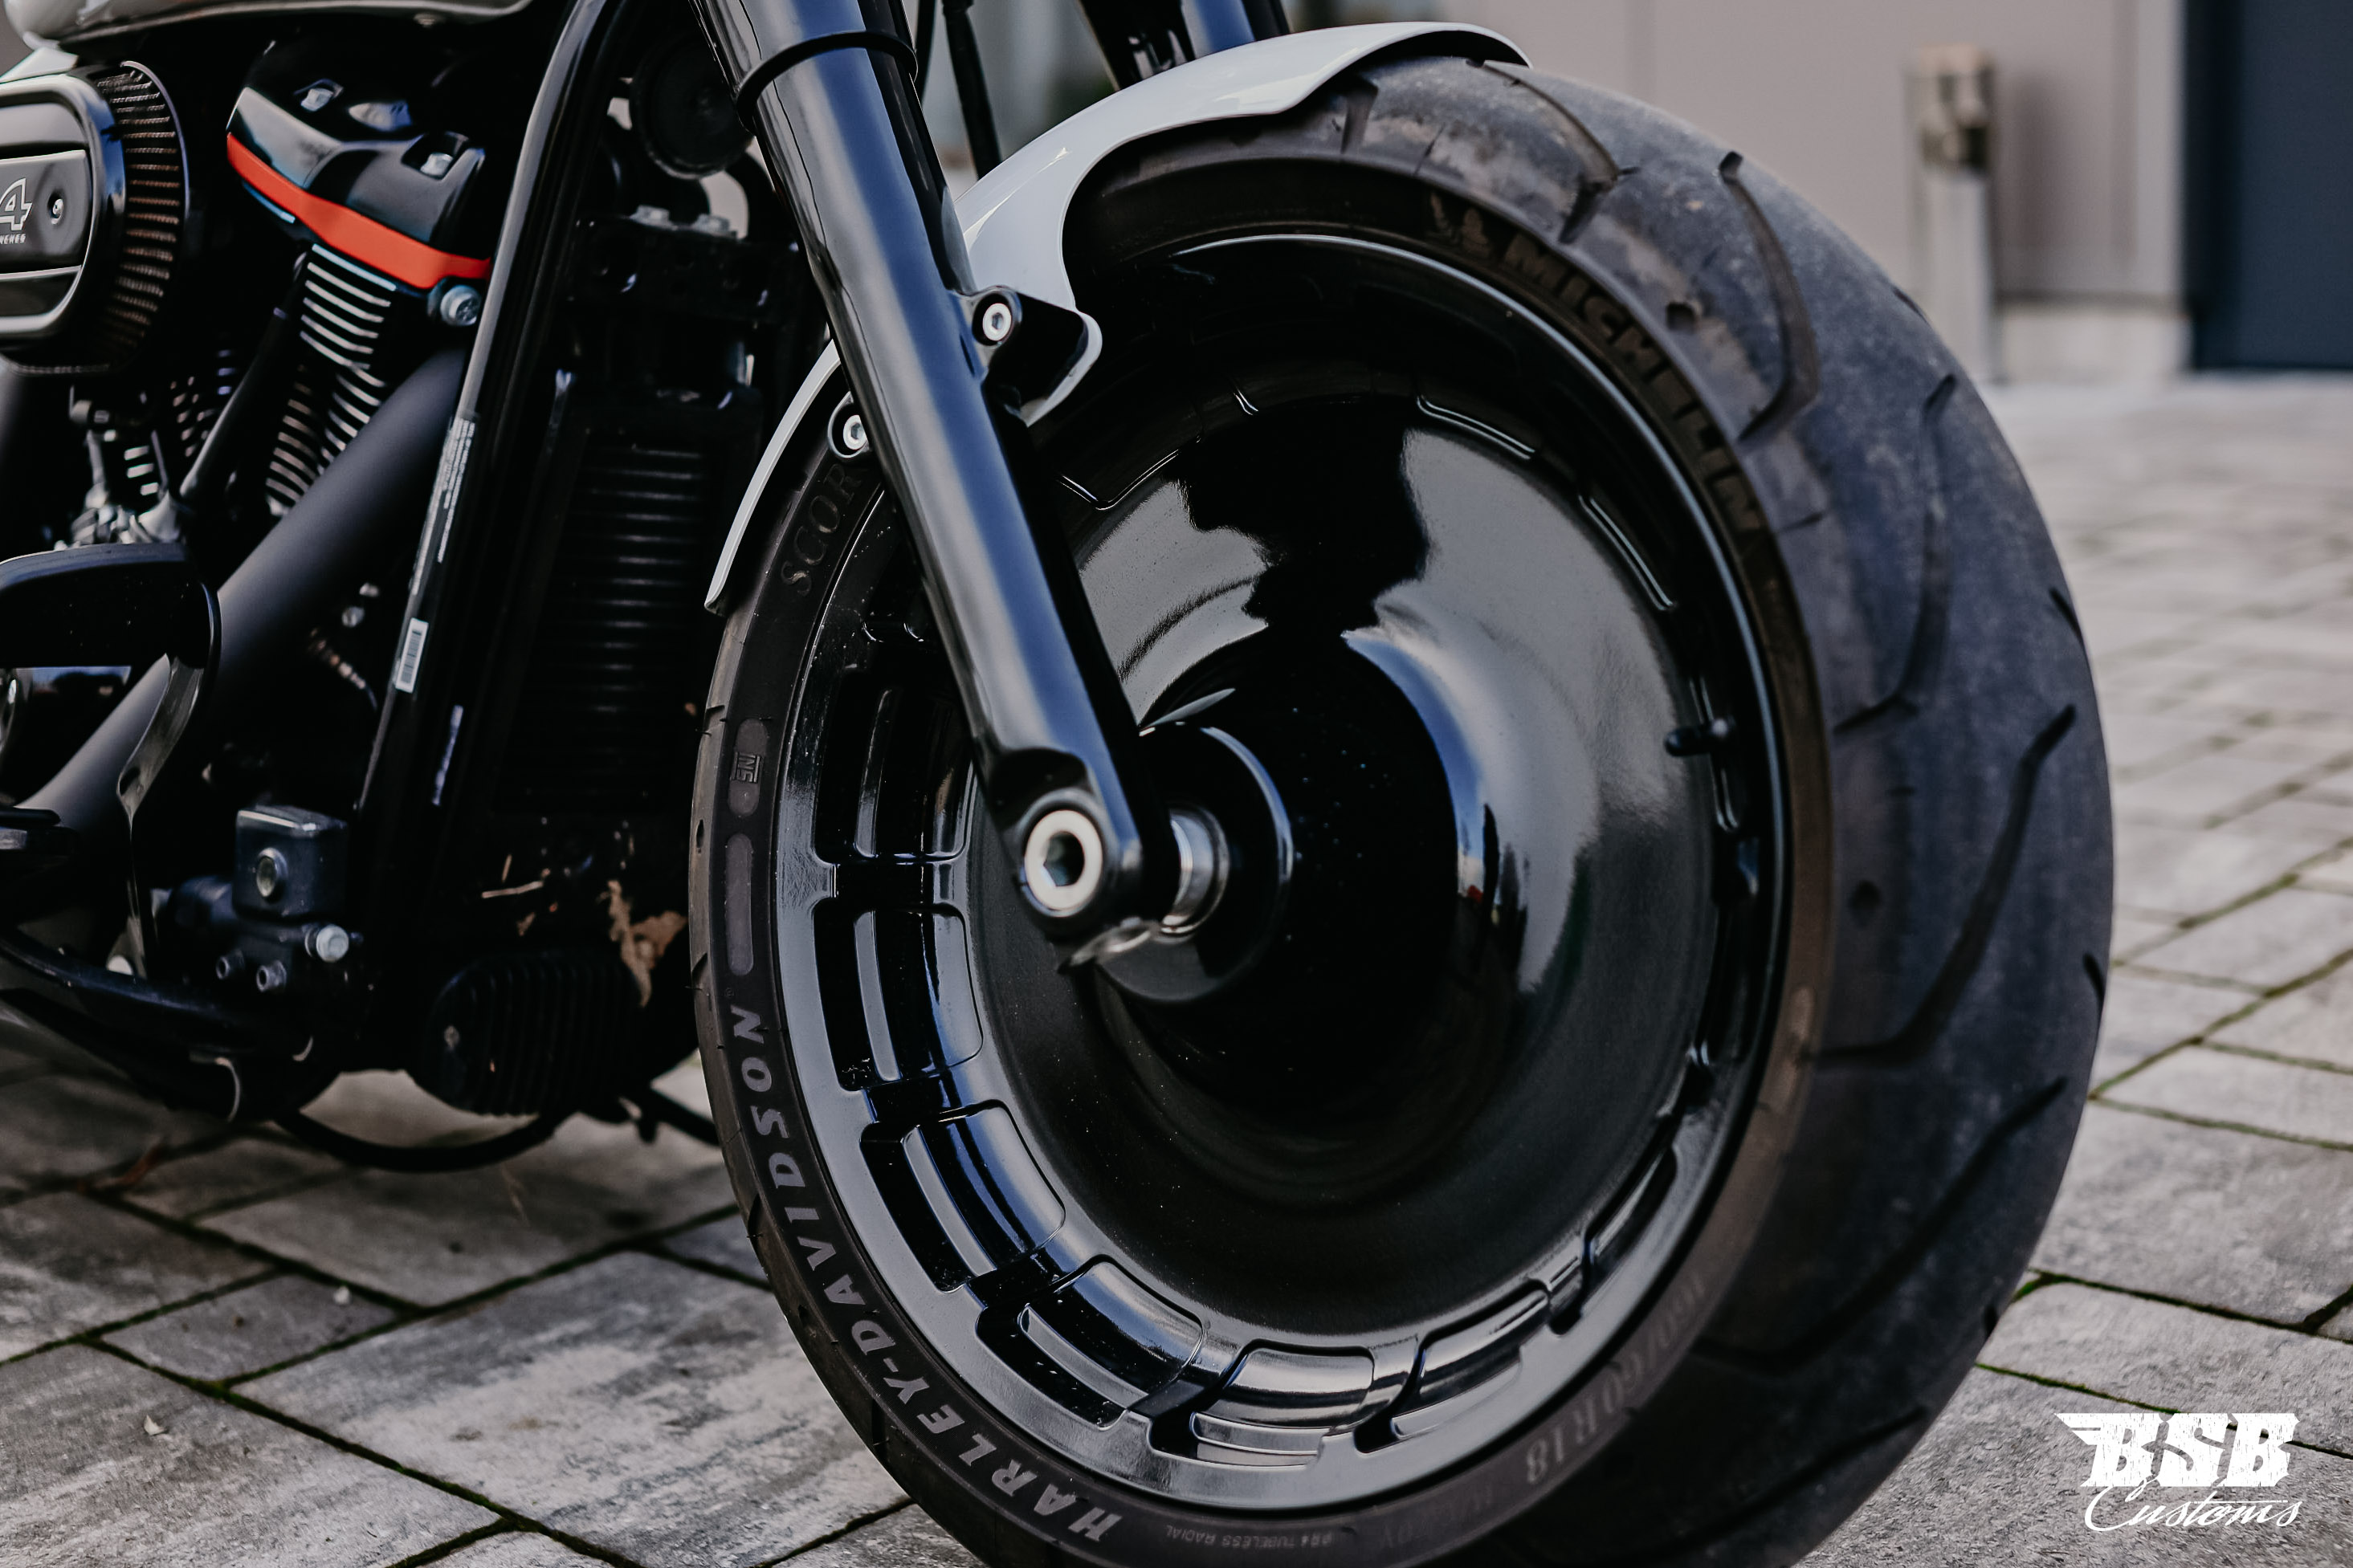 2019 Harley Davidson FAT BOY 107 CUI mit Umbau // Jekill // 12 Monate Garantie ab 330 EUR finanzieren*